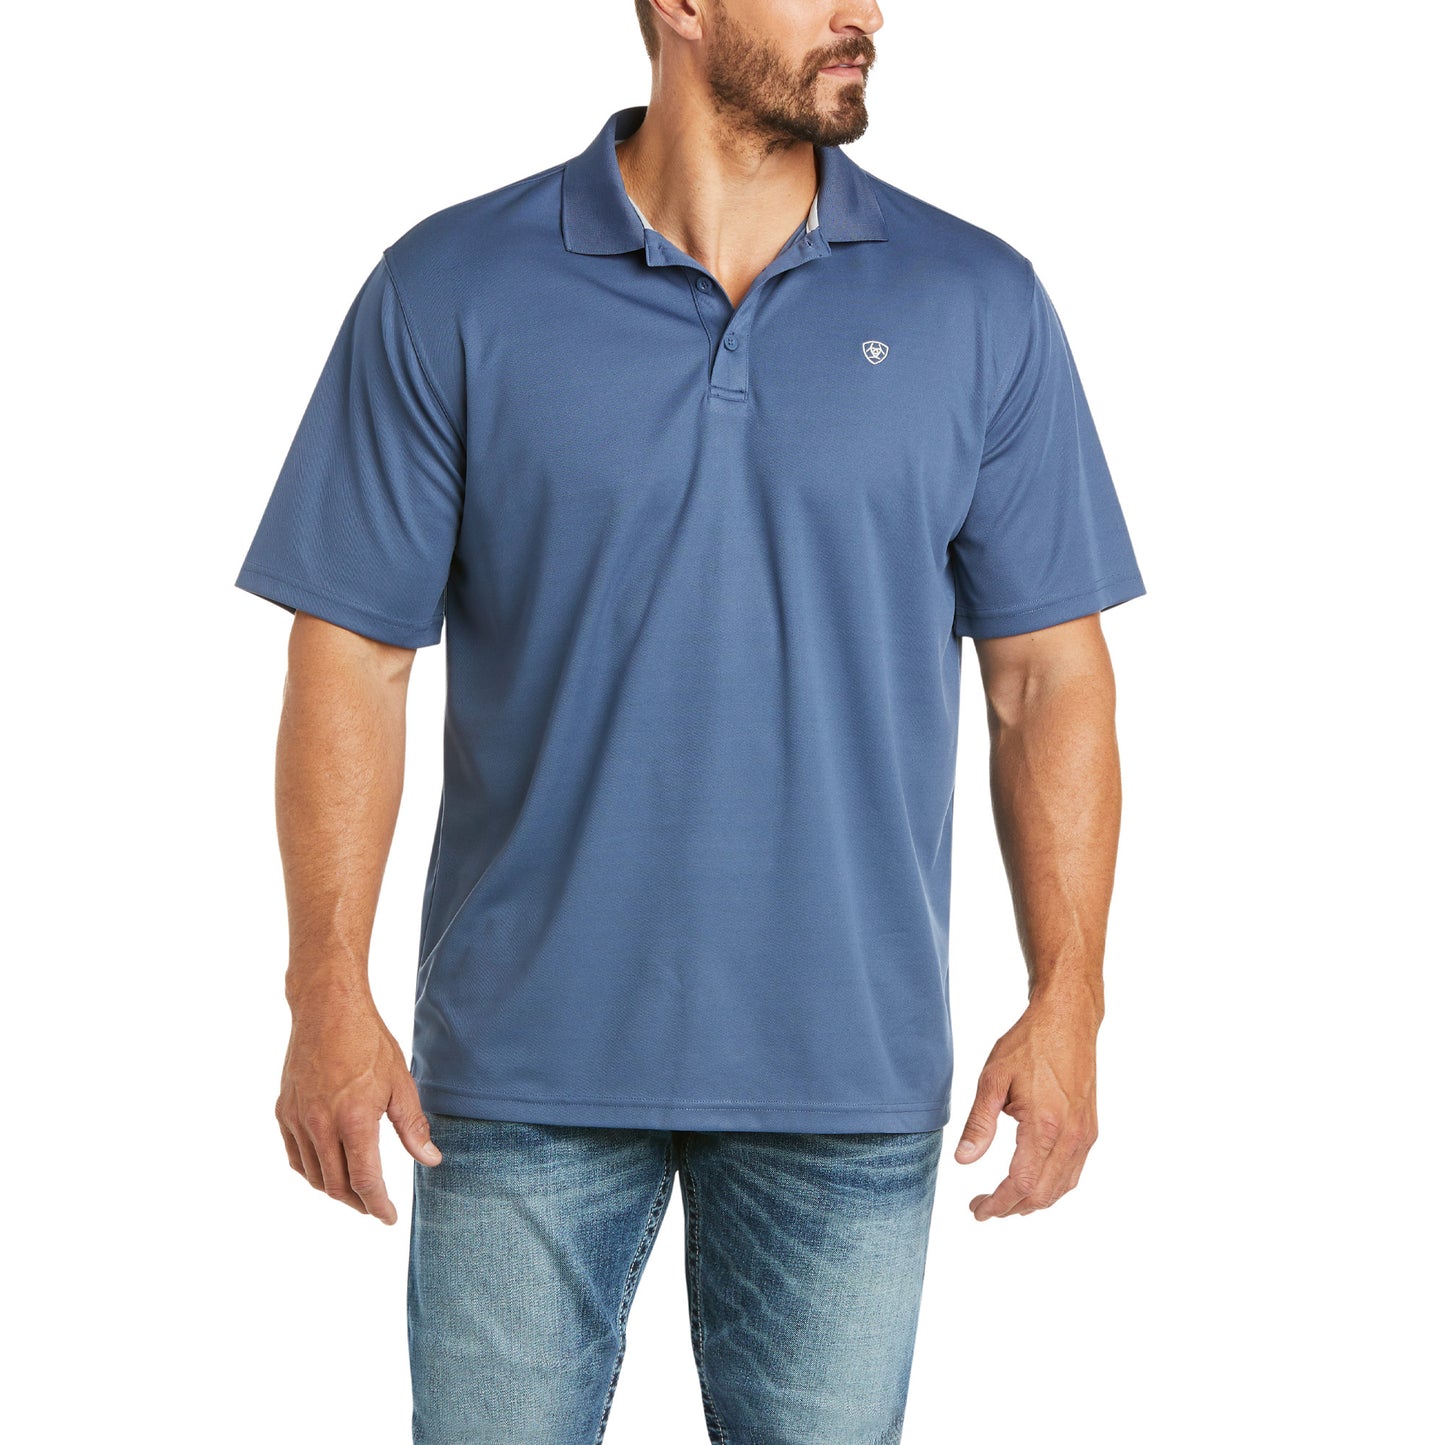 Ariat Men's Tek Polo Old Bay Short Sleeve Shirt 10034957